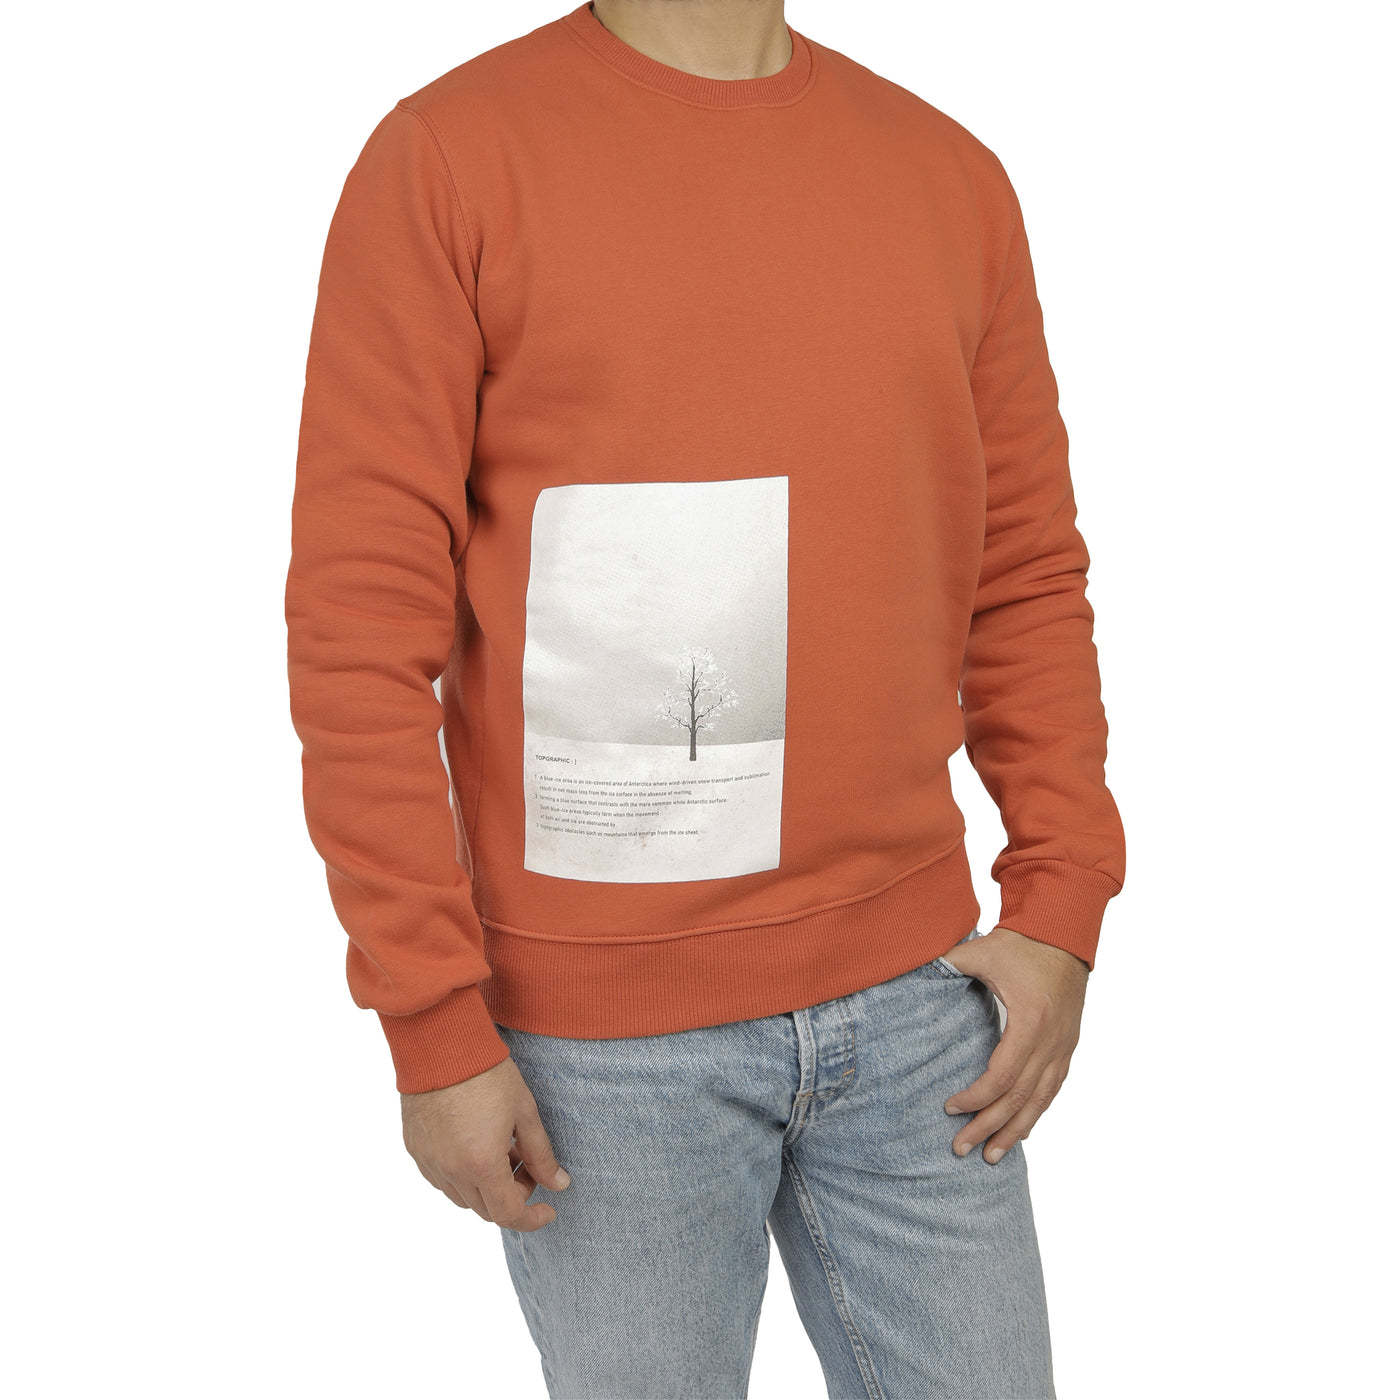 Printed Brick Sweatshirt